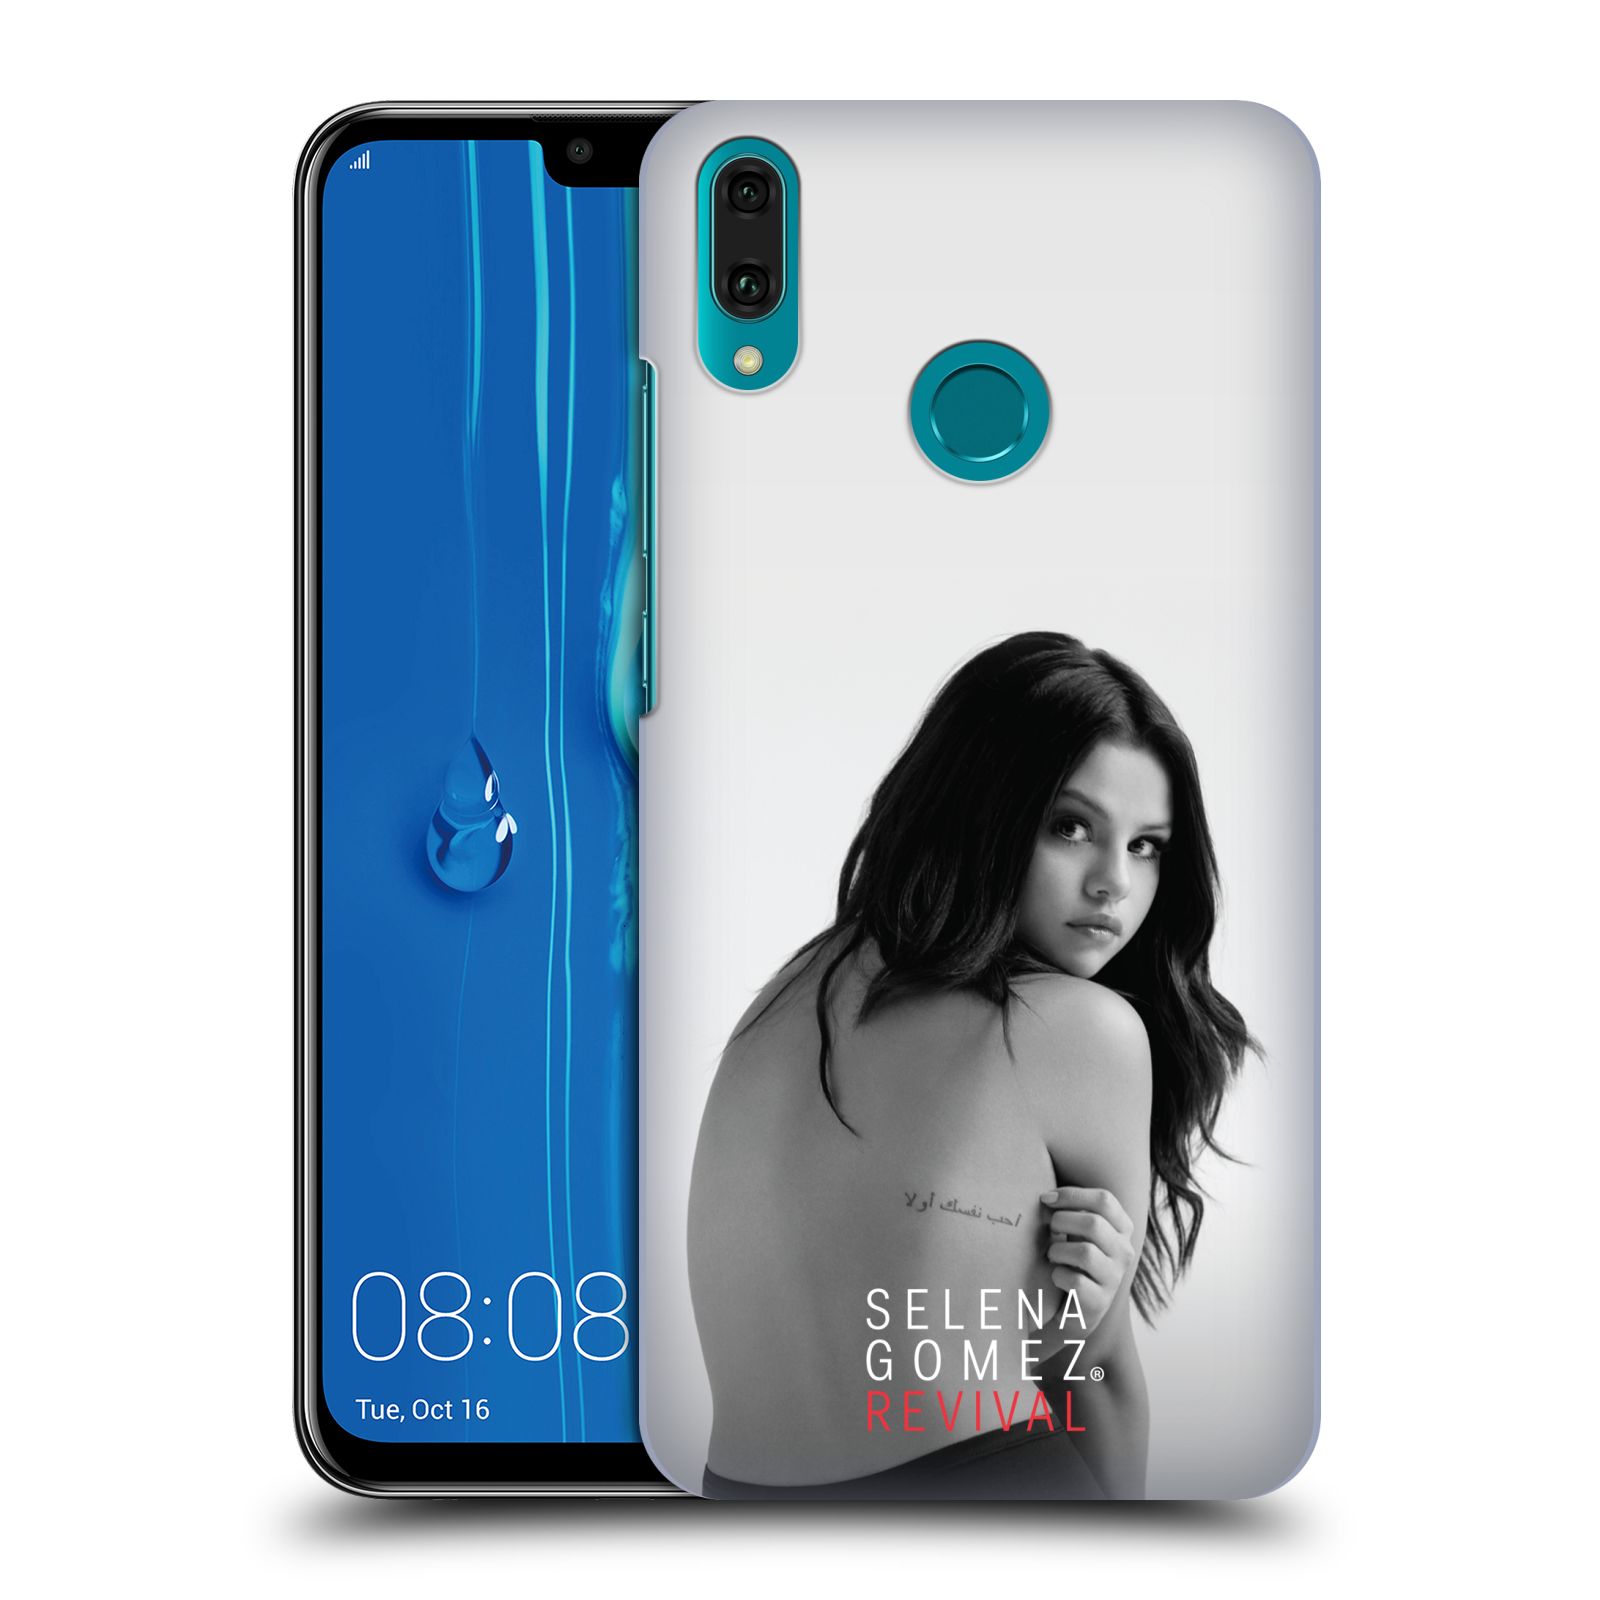 Pouzdro na mobil Huawei Y9 2019 - HEAD CASE - Zpěvačka Selena Gomez foto Revival zadní strana